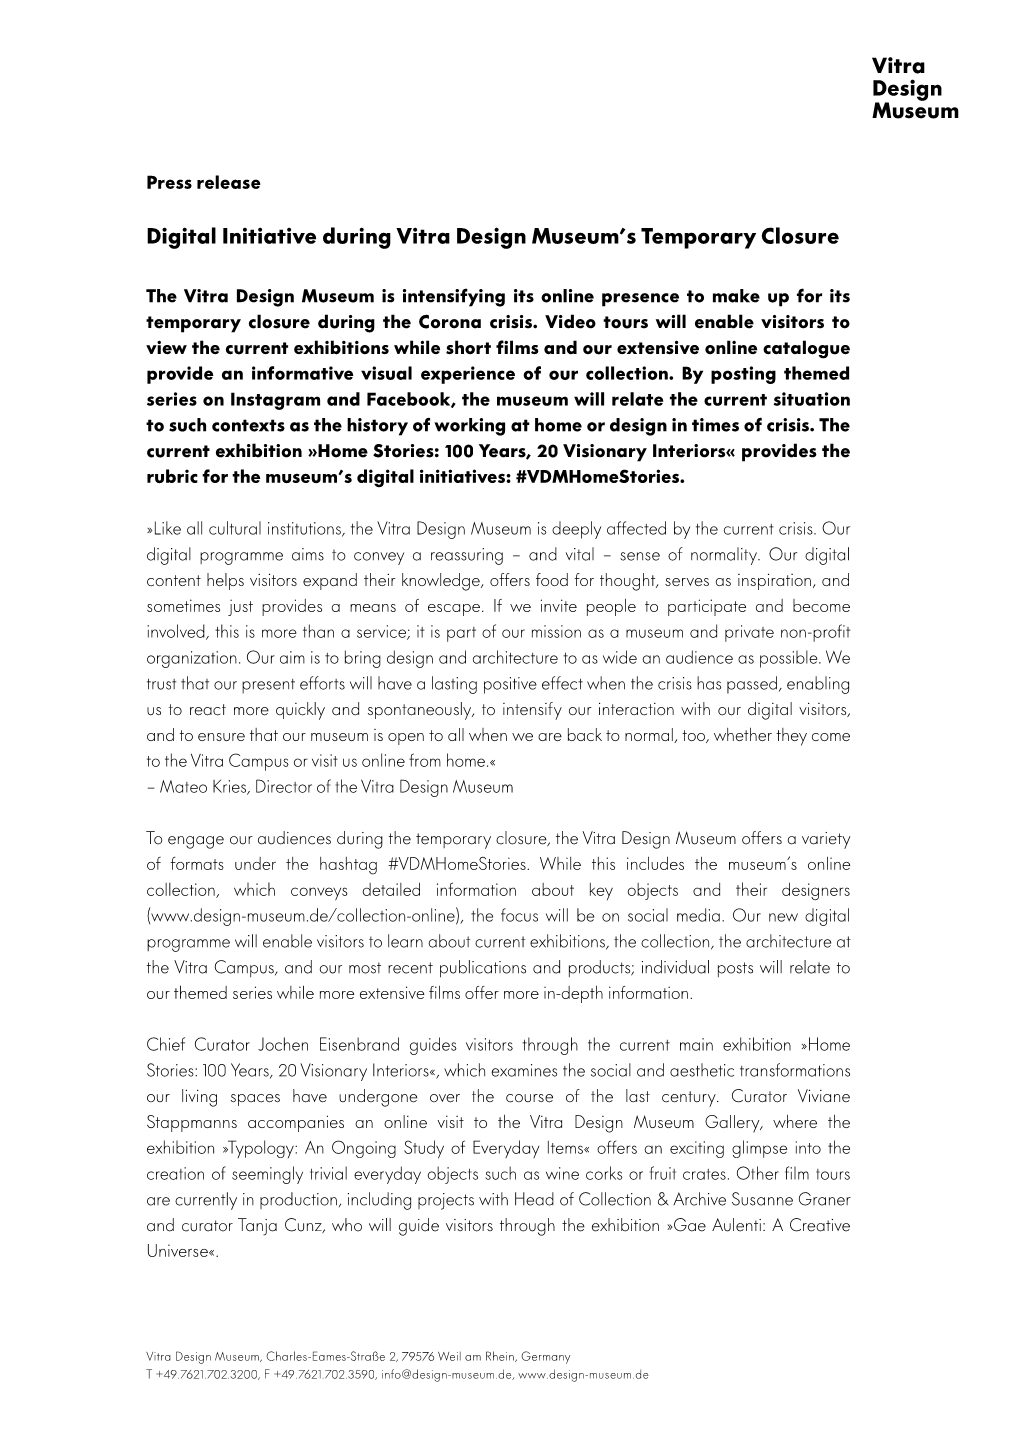 Digital Initiative During Vitra Design Museum's Temporary Closure